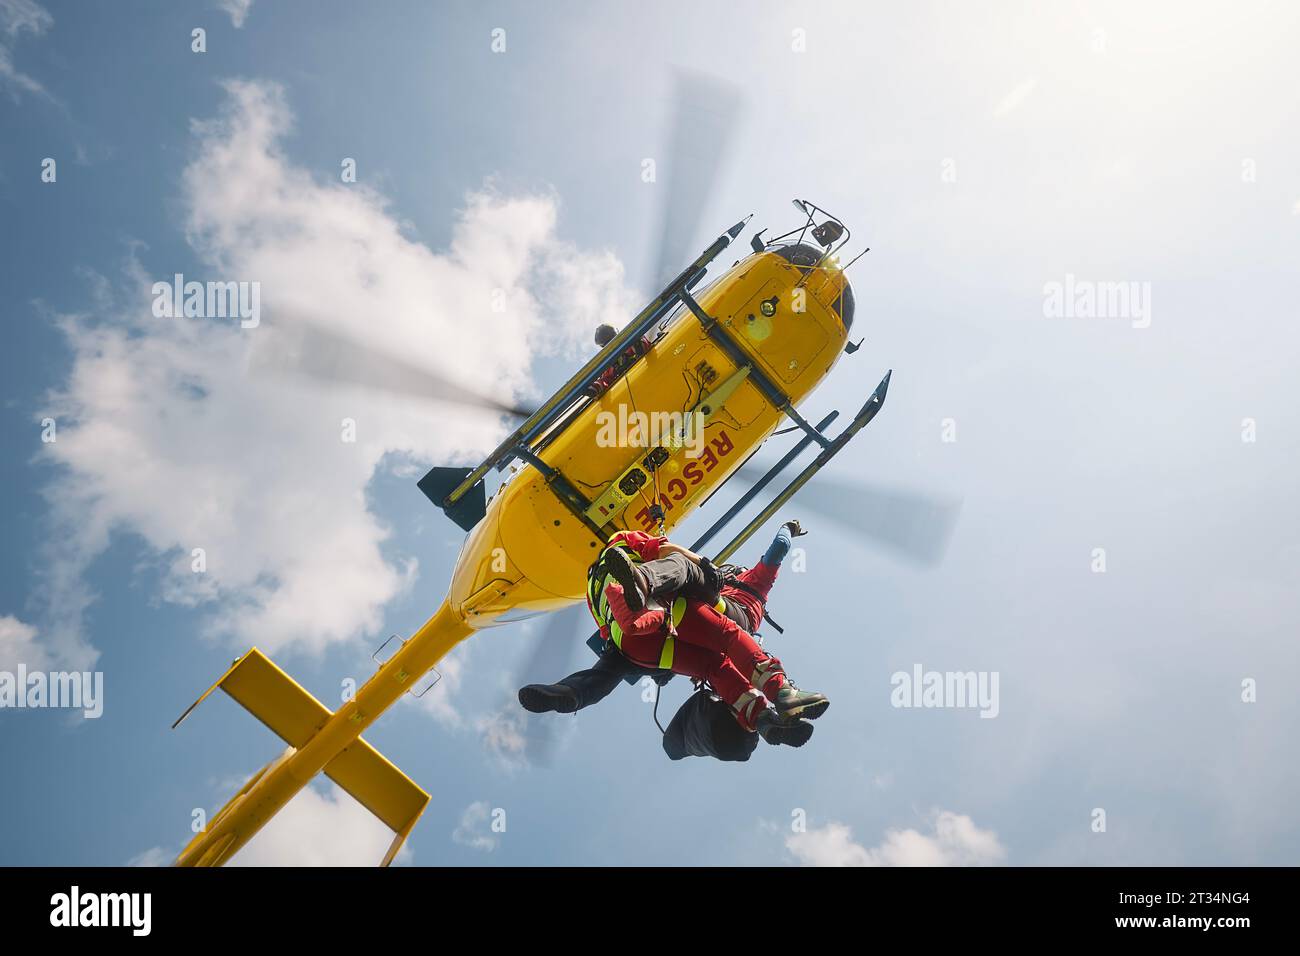 Zwei Sanitäter hängen am Seil unter fliegendem Hubschrauber-Notdienst. Themen Rettung, Hilfe und Helden. Stockfoto